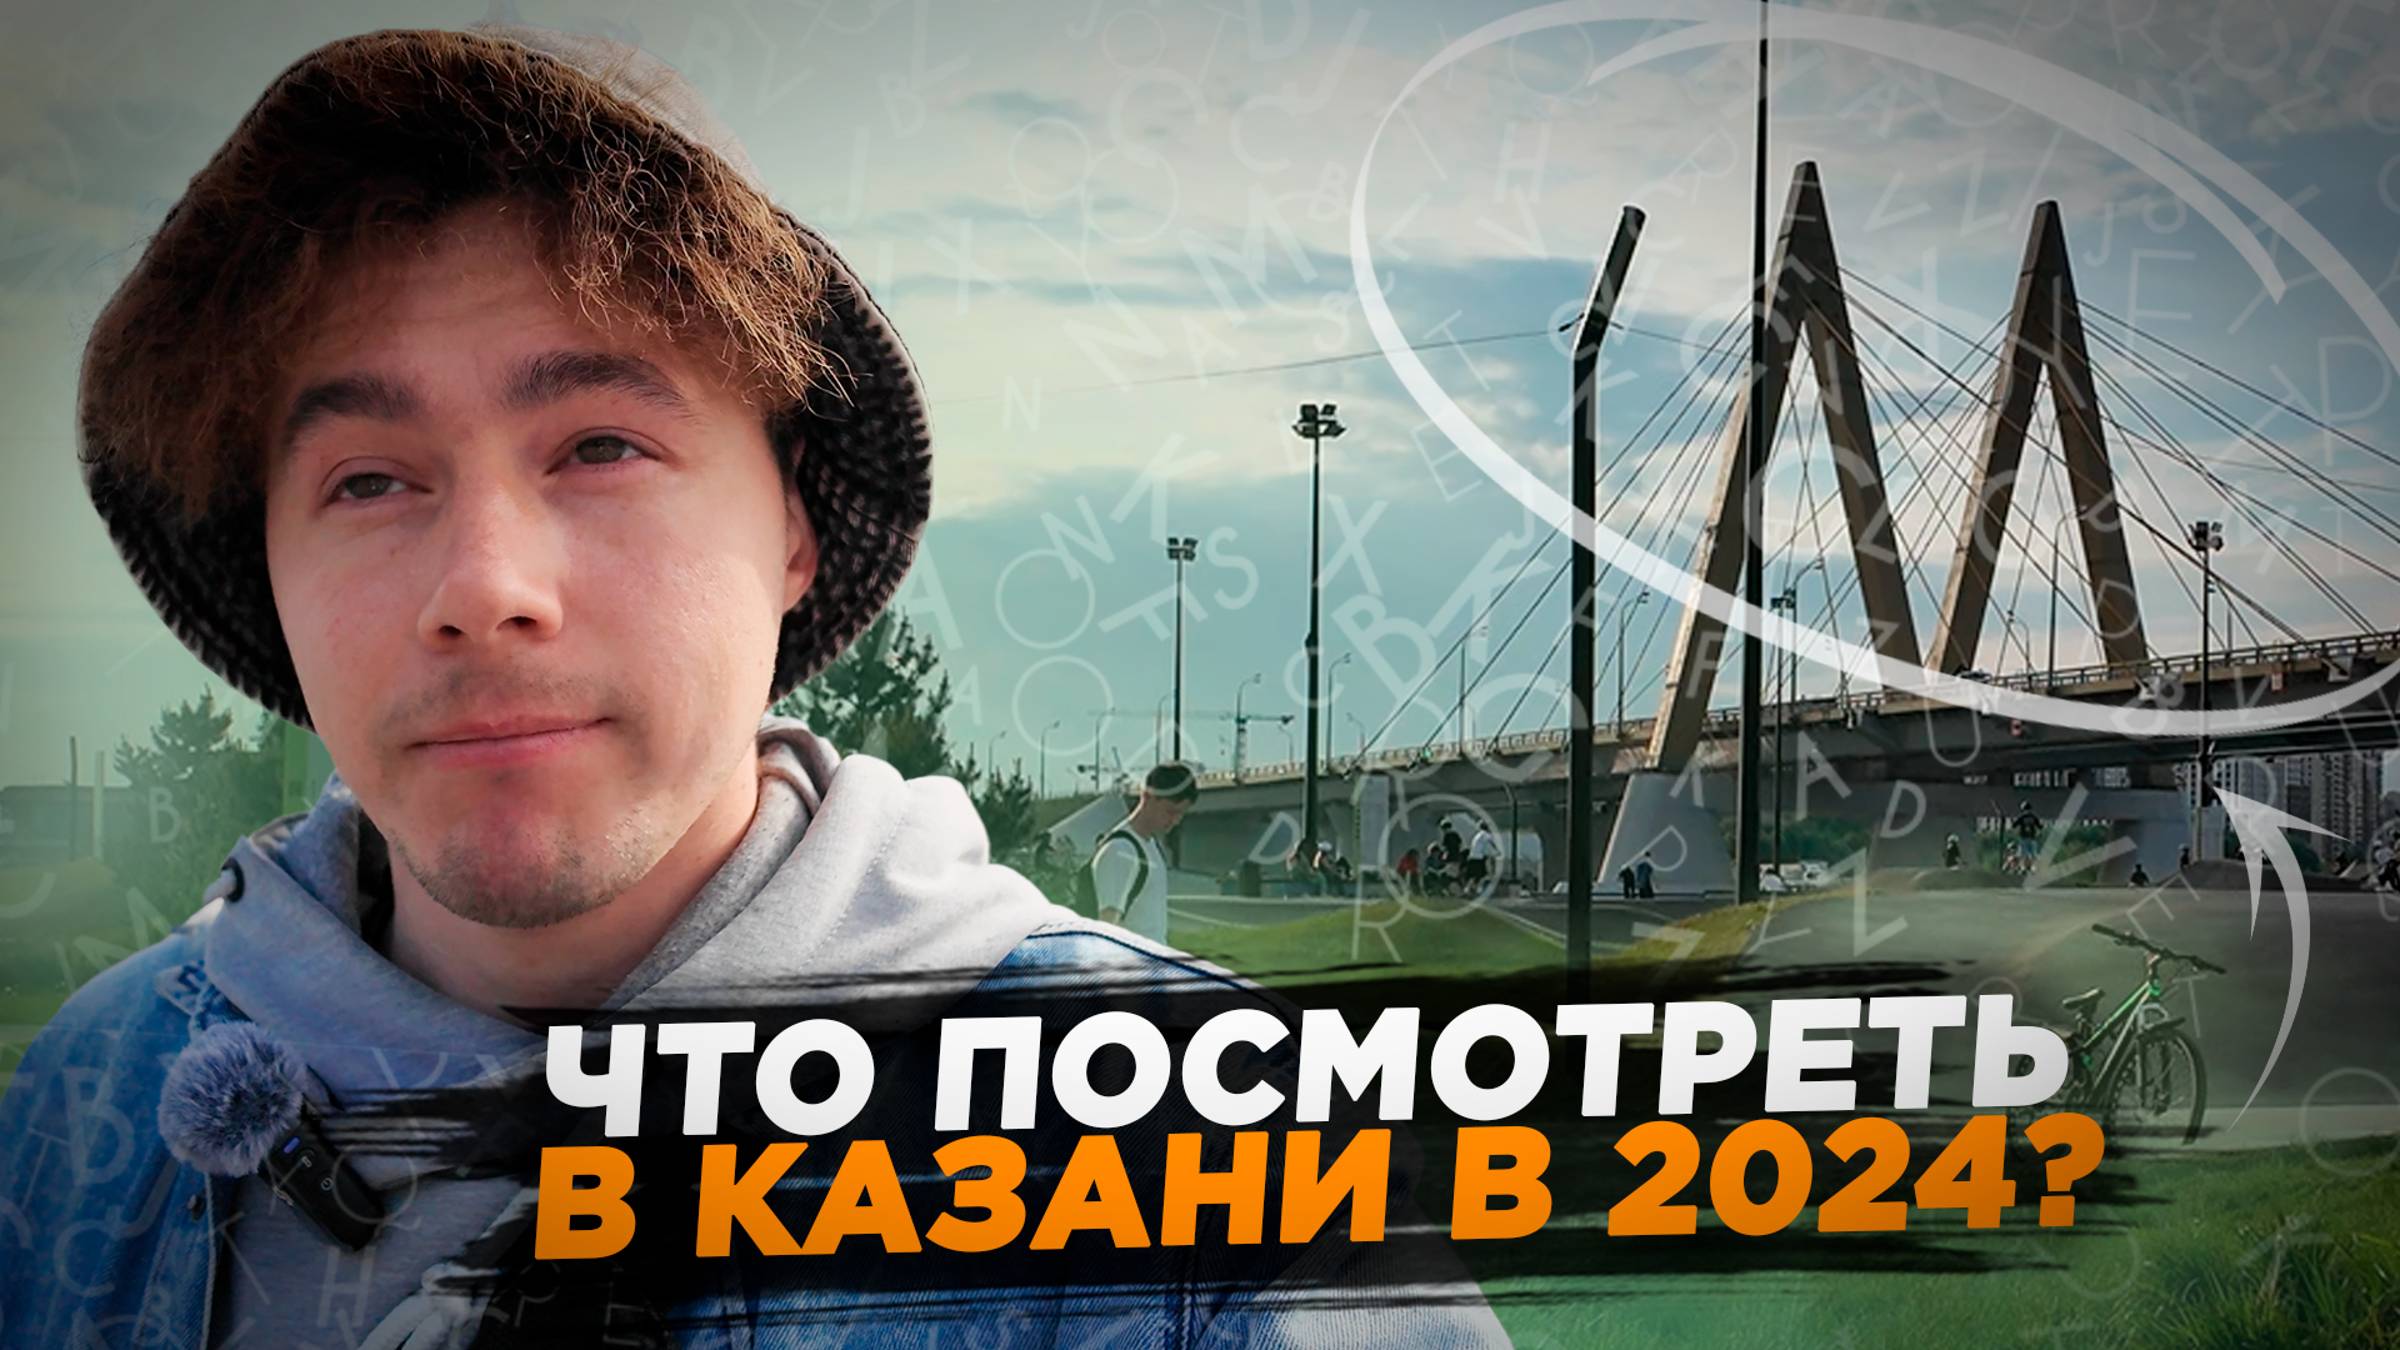 Что посмотреть в Казани и куда сходить в Казани в 2024? Популярная Казань